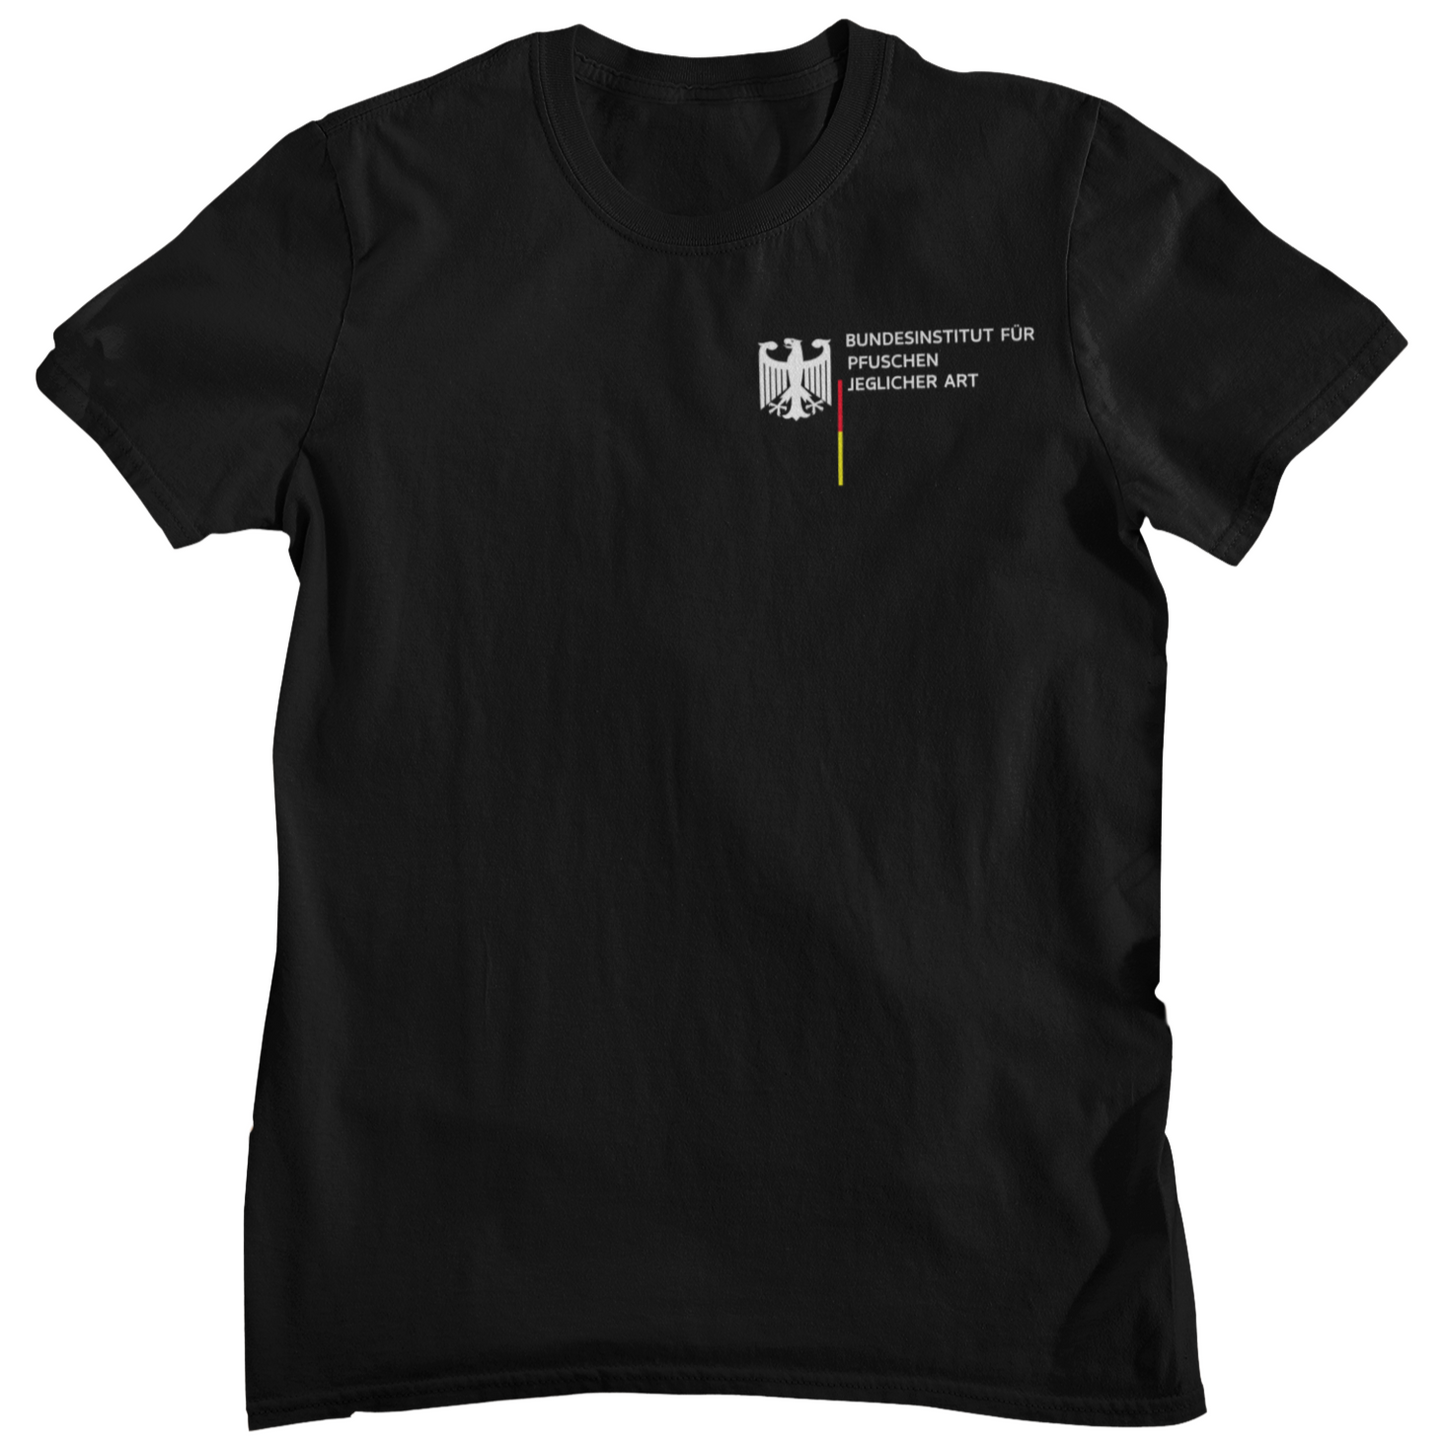 Bundesinstitut Pfuschen jeglicher Art  - Unisex Shirt